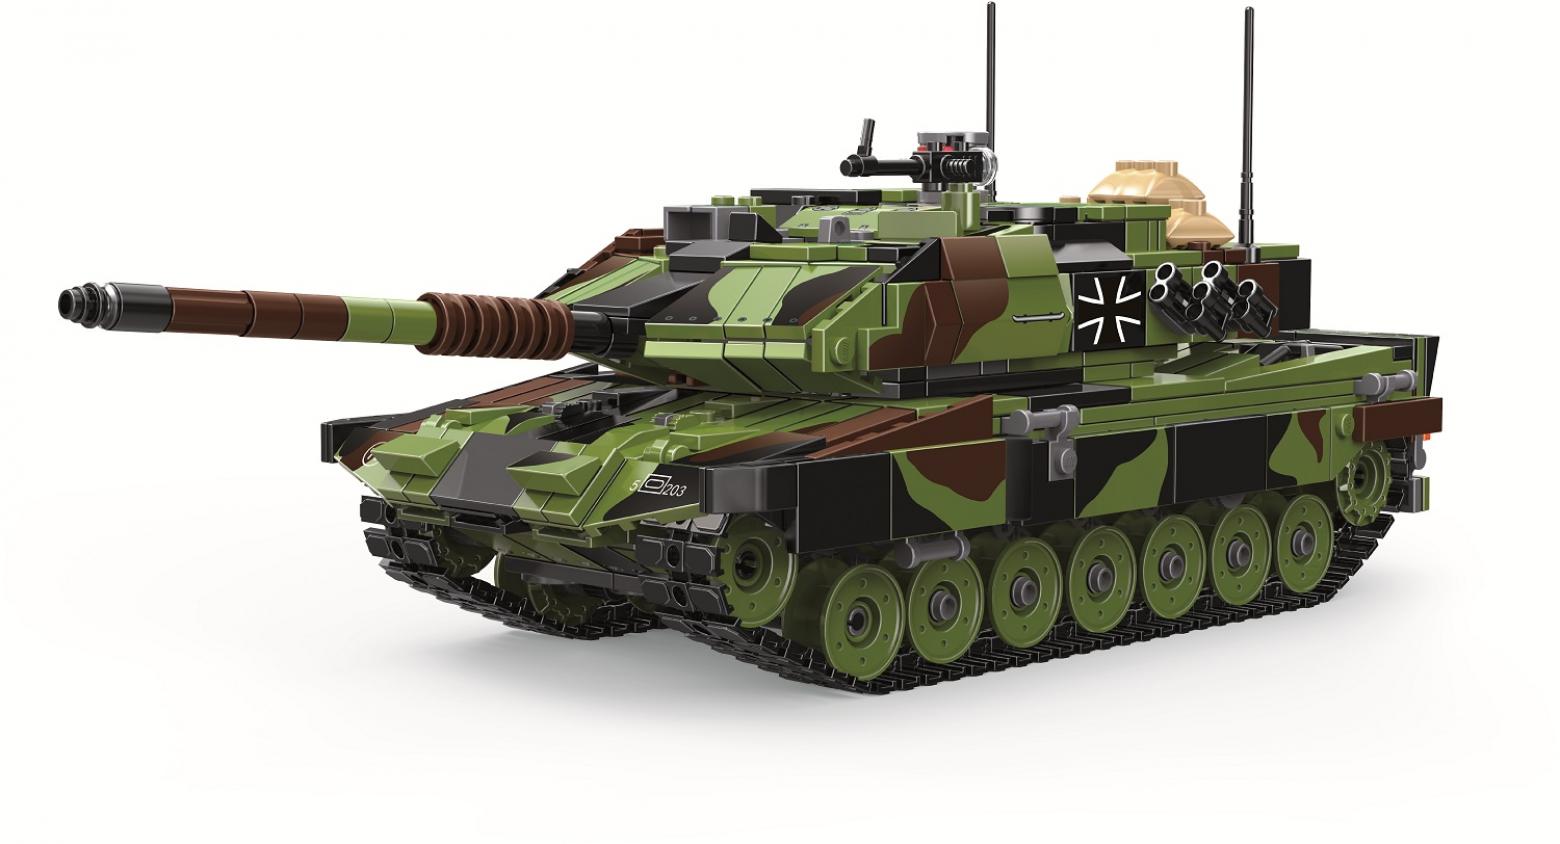 6105-豹2A6主战坦克-正面.jpg